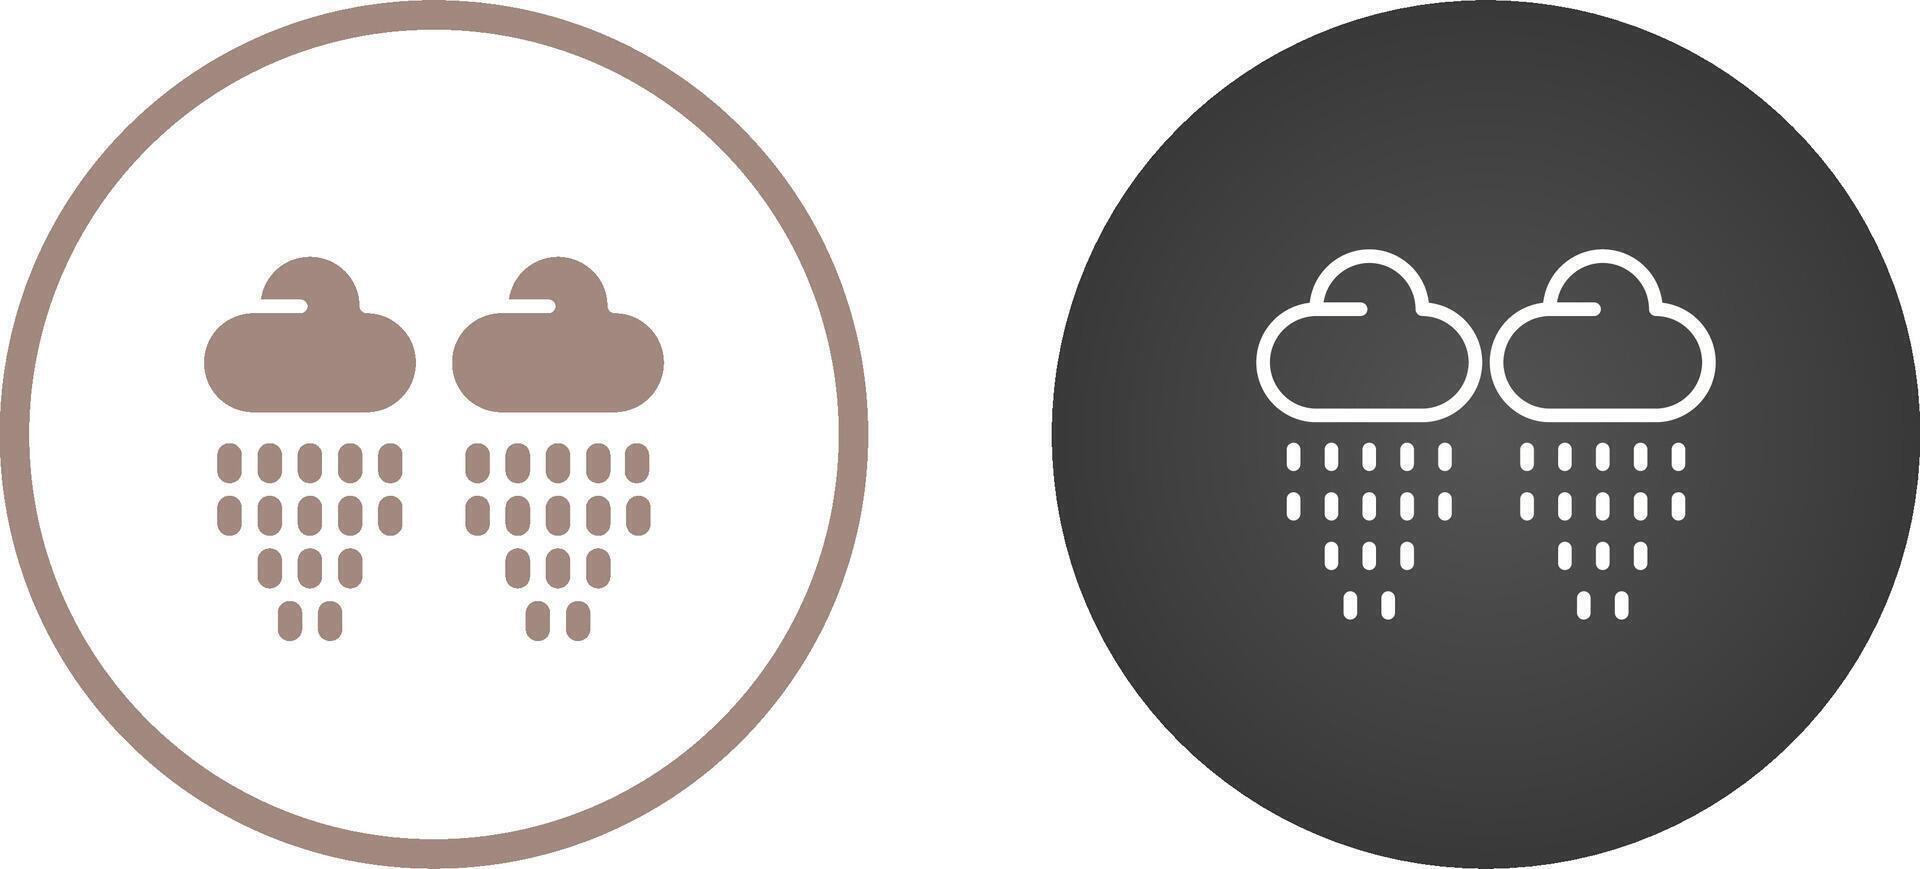 regndroppe vektor ikon